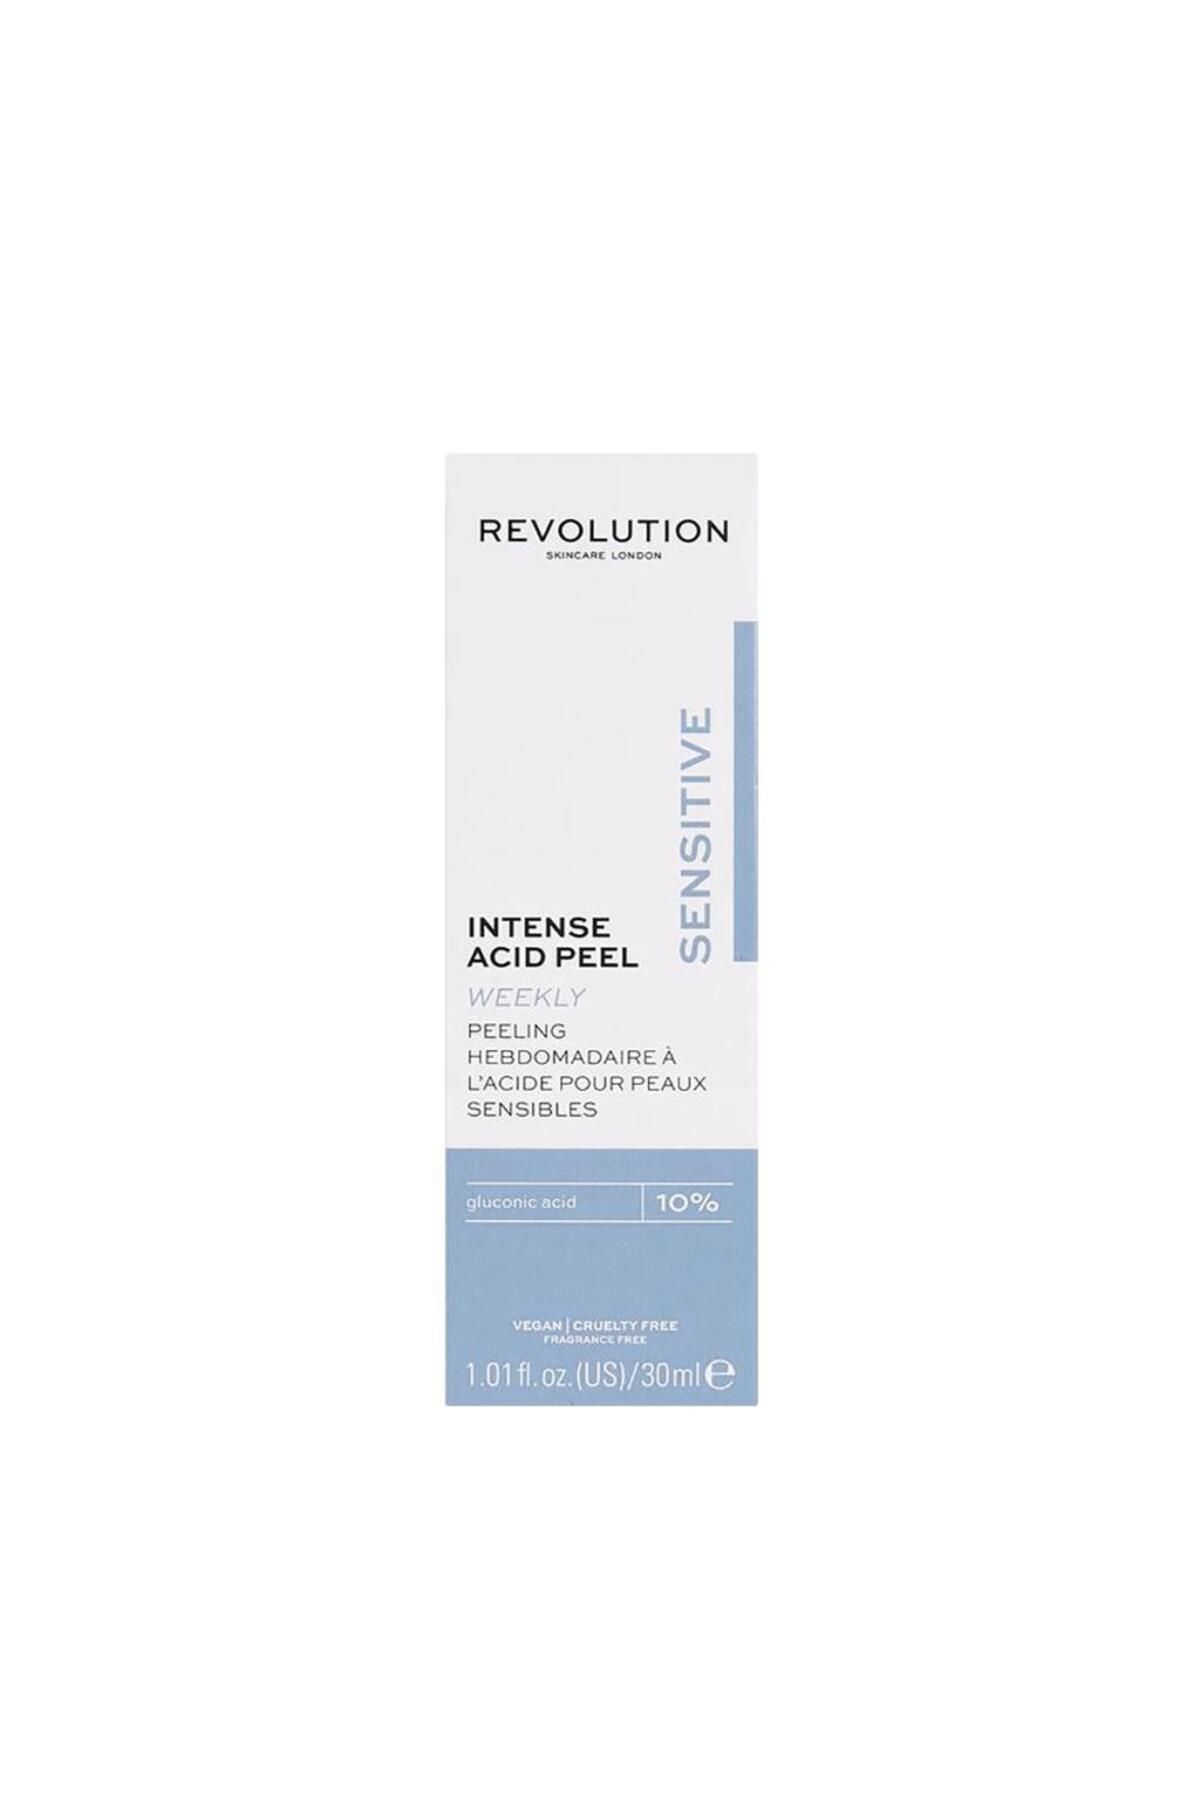 REVOLUTİON SKİNCARE Revolution Skincare Hassas Ciltler Için Peeling 30 ml